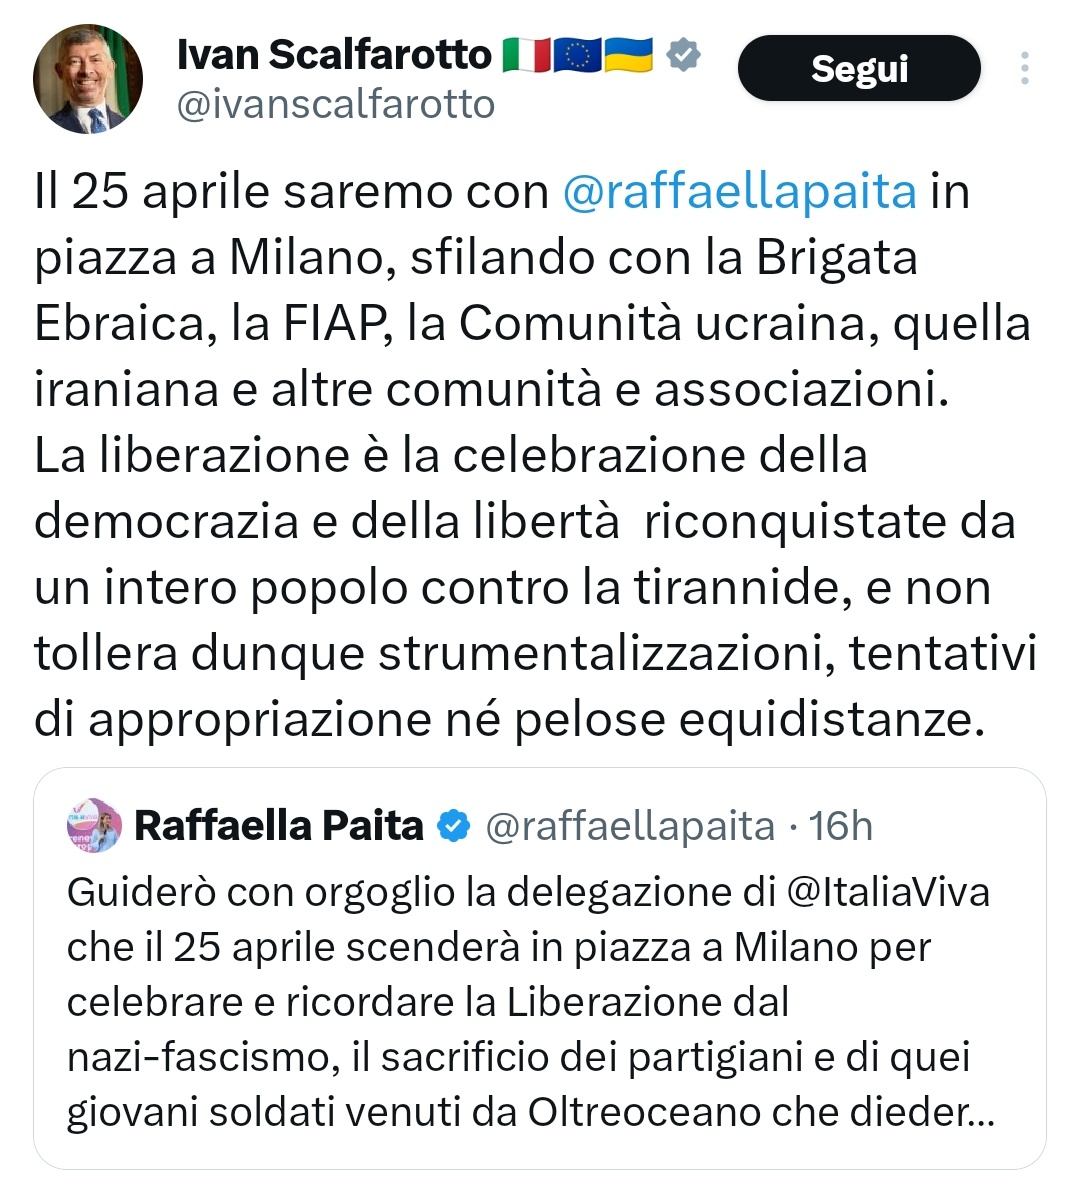 Ammirate quanto sono cazzari quelli di #arabiaviva🤡🤡🤡
Renzi fa polemica che #Landini istituisce banchetti per la raccolta di firme per abolire il #jobact
Si fa un uso strumentale del #25aprile 

Leggete come invece #faraone che vuole fare il 25 aprile.
Ma non vi vergognate…